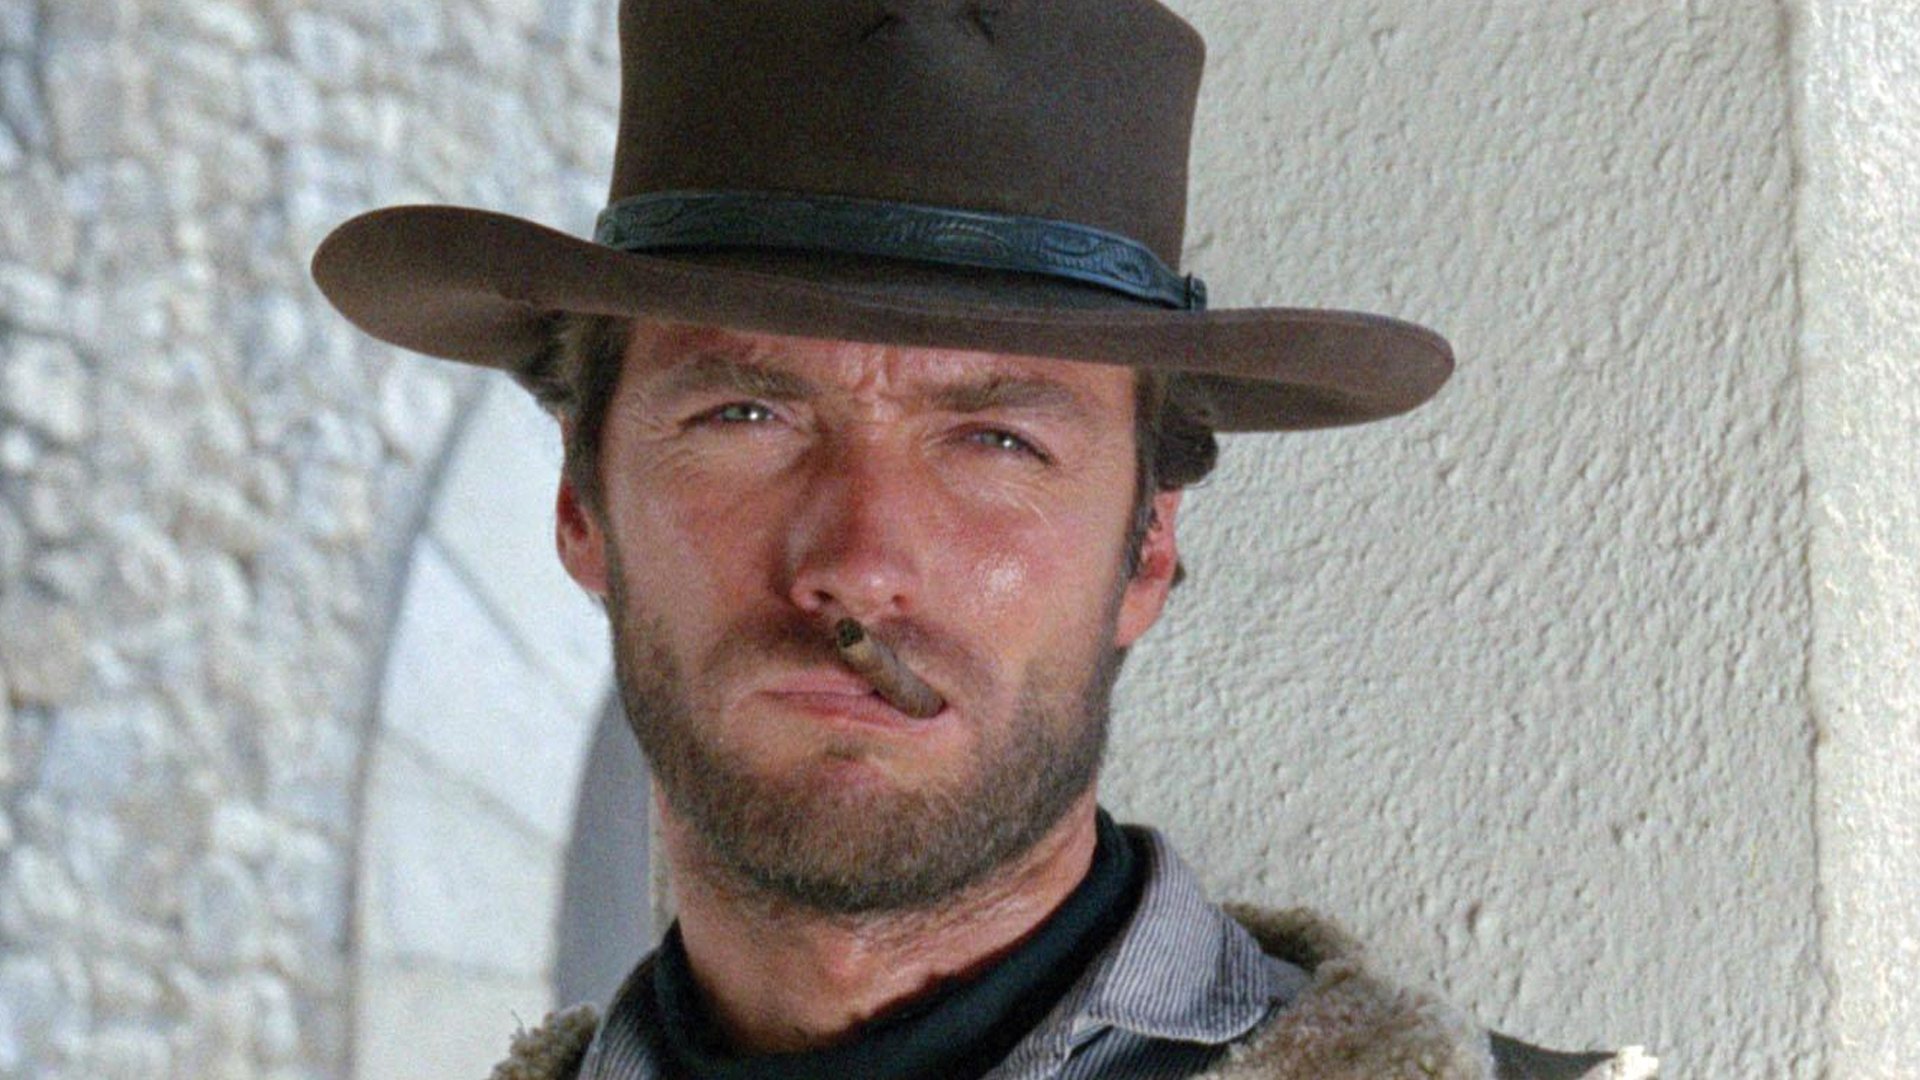 Vemos o personagem sem nome, interpretado por Clint Eastwood no filme Por um punhado de dólares. Ele é um homem branco de barba, chapéu de cowboy marrom e tem um charuto na boca